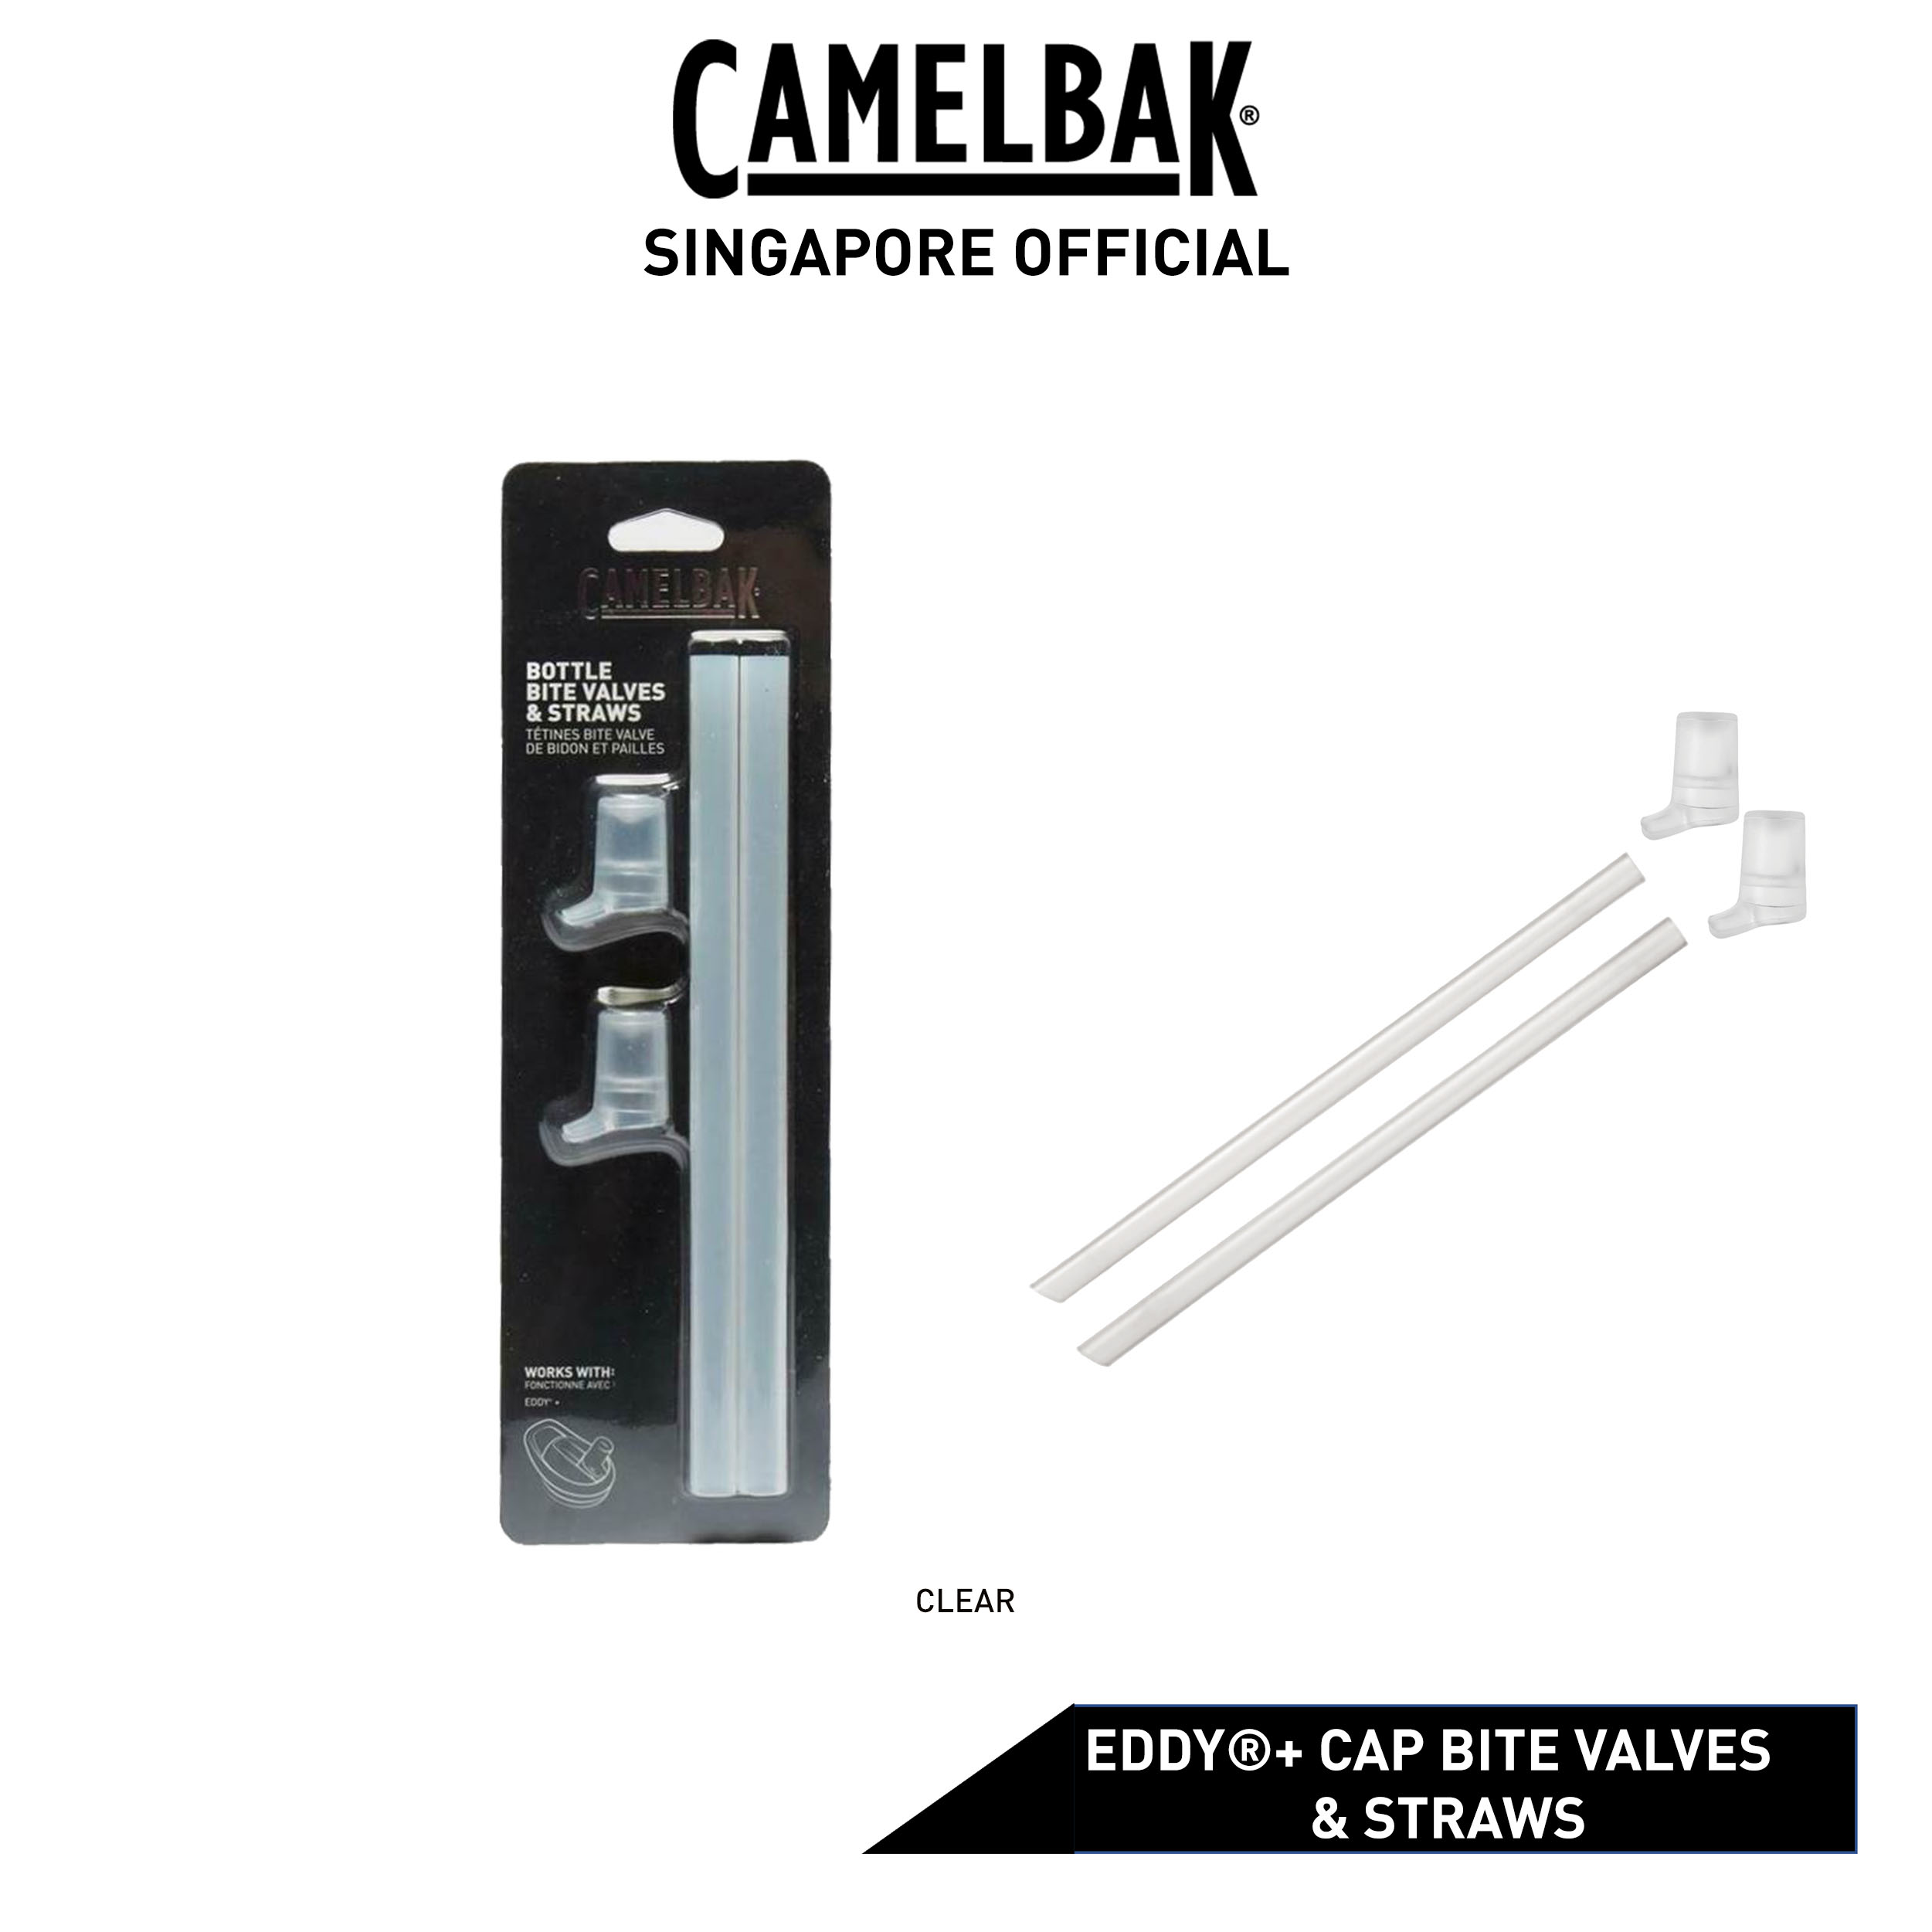 Camelbak Bite Valves+Straw For Eddy+ Clear